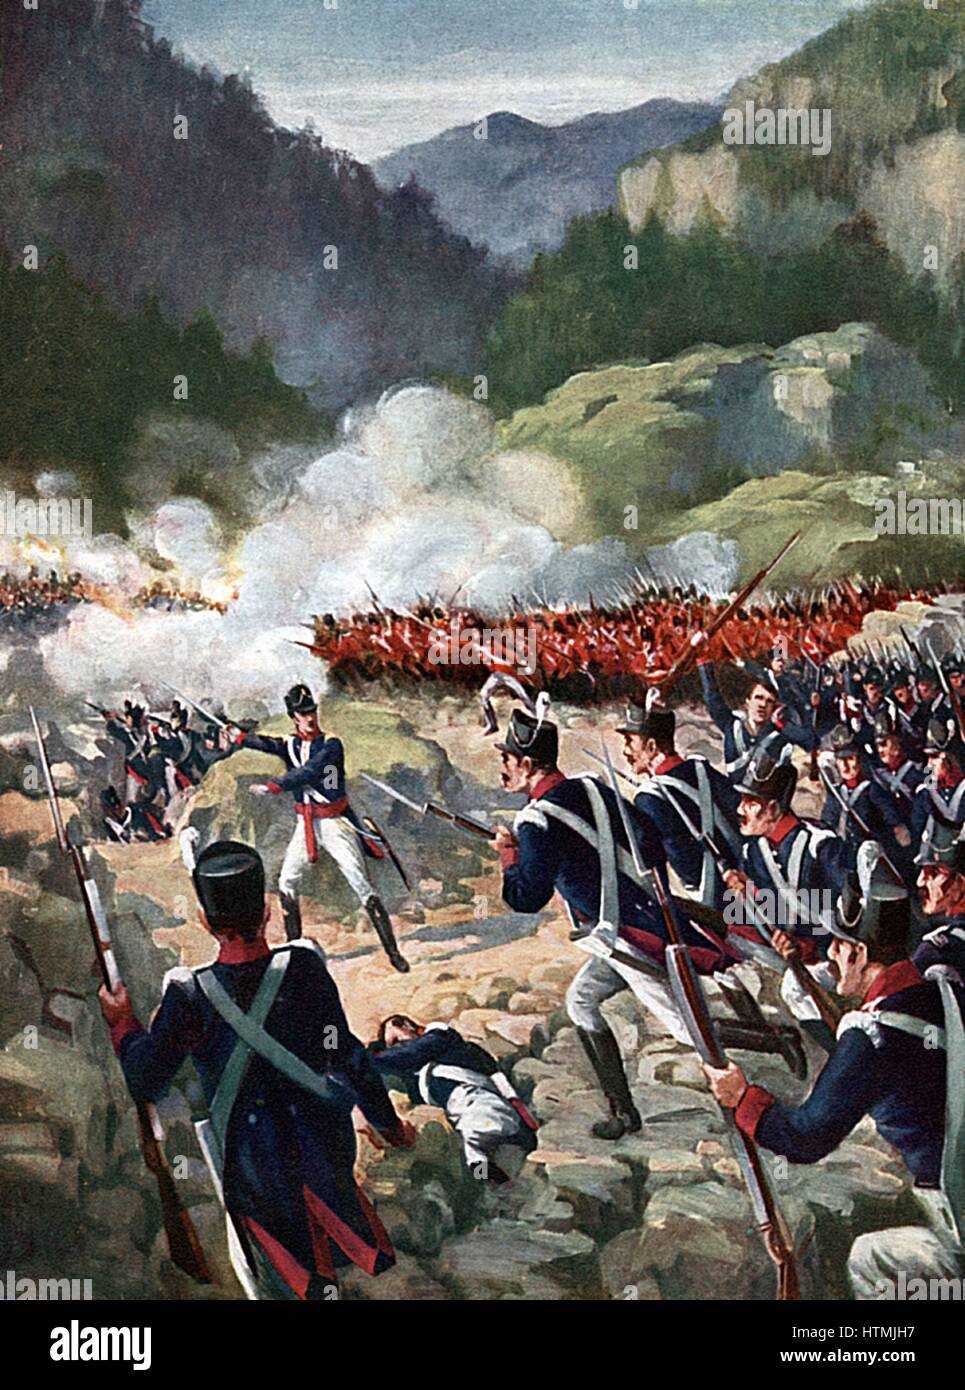 Schlacht von Busaco, 27 September 1810:British und alliierten Truppen unter Wellington zurückgeschlagen Franzosen unter Massena. Abbildung Stockfoto